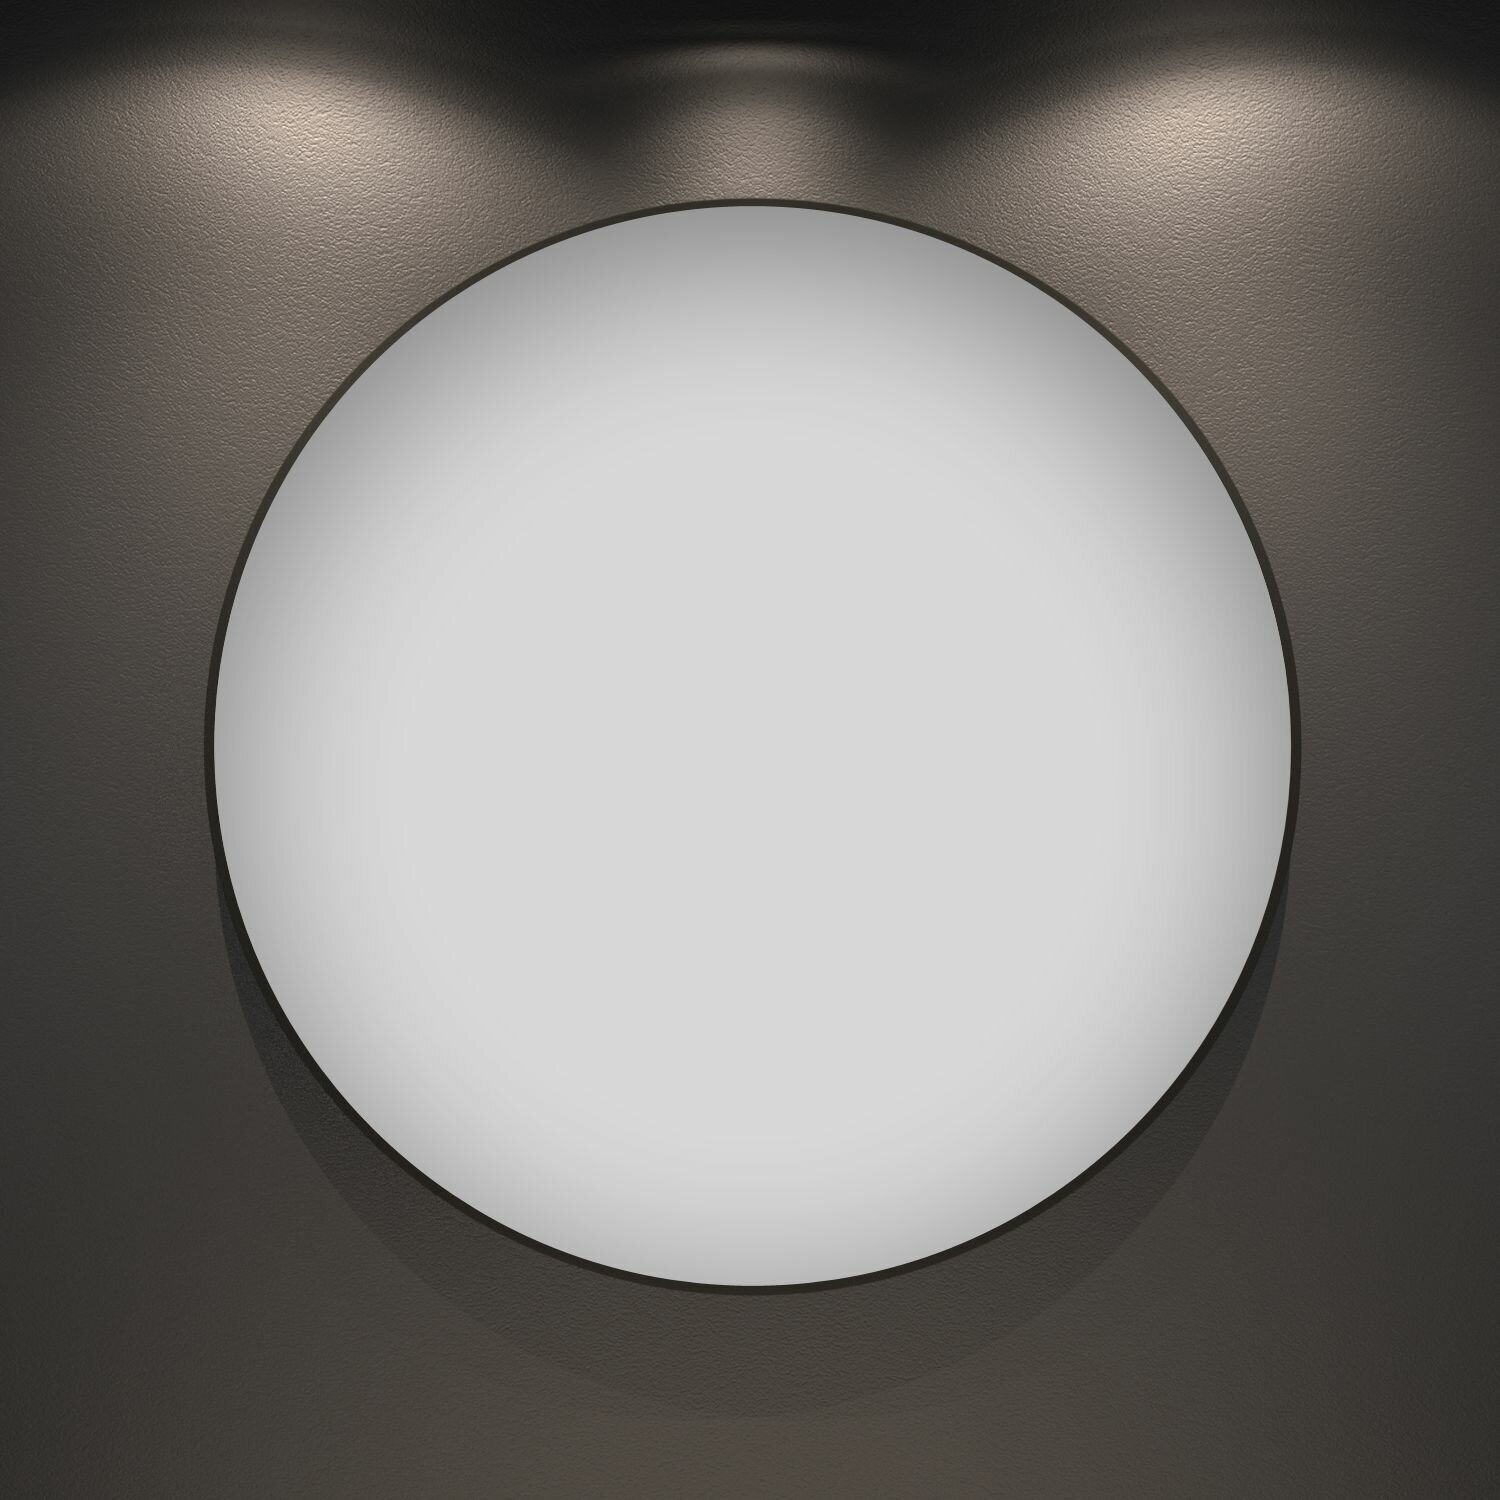 Настенное зеркало в ванную Wellsee 7 Rays' Spectrum 172201750 : влагостойкое круглое зеркало 55 см с черным матовым контуром